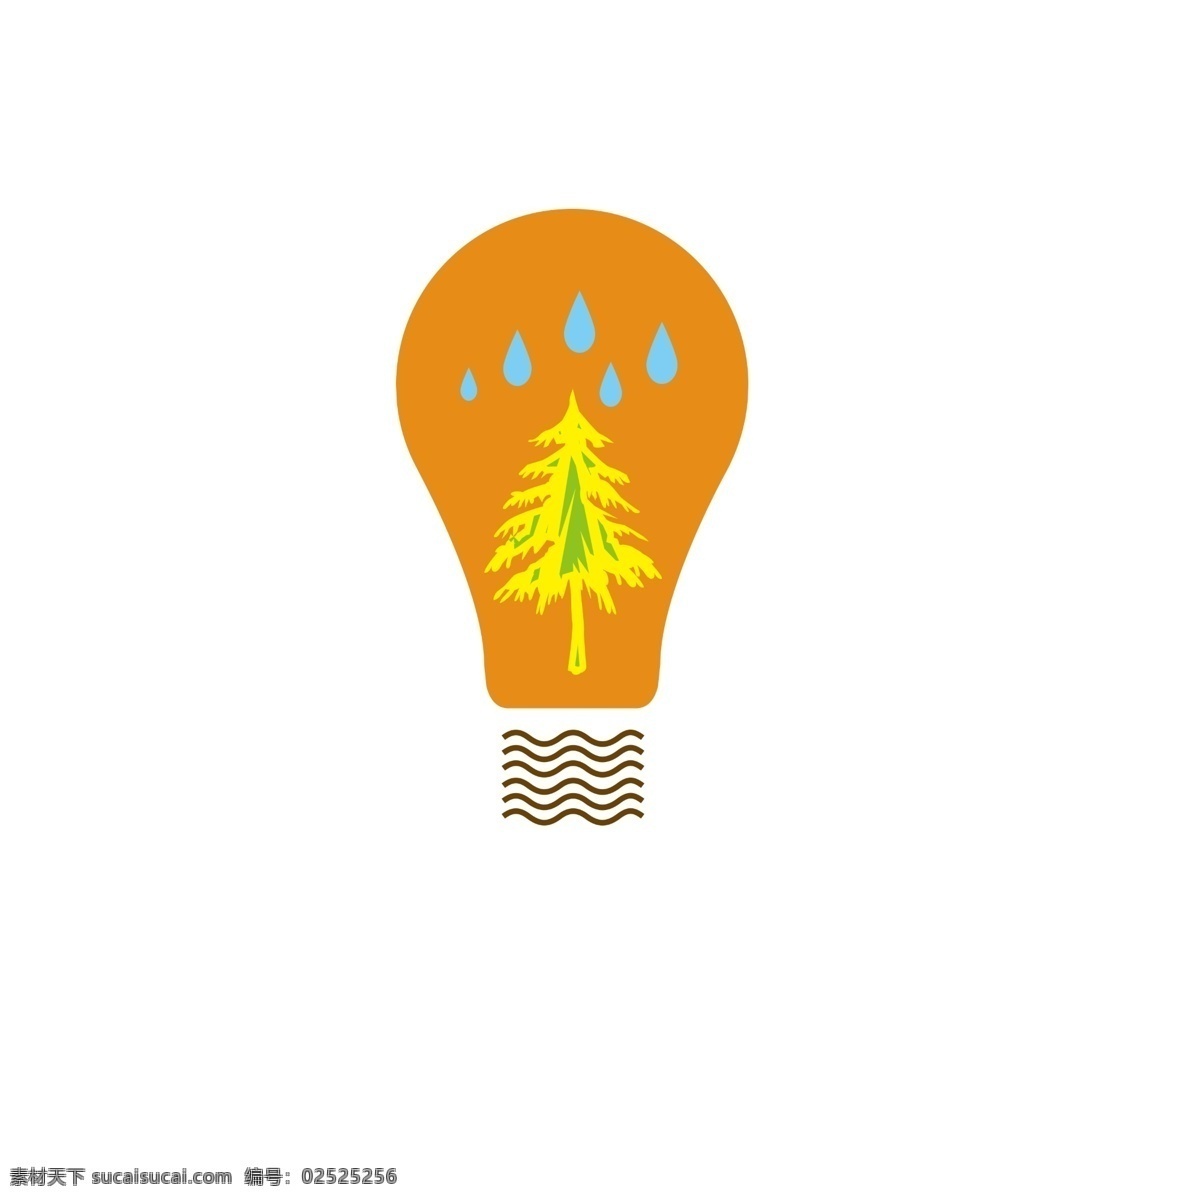 树木 灯泡 装饰 插画 树木灯泡 黄色的灯泡 漂亮的灯泡 创意灯泡 立体灯泡 精美灯泡 卡通灯泡